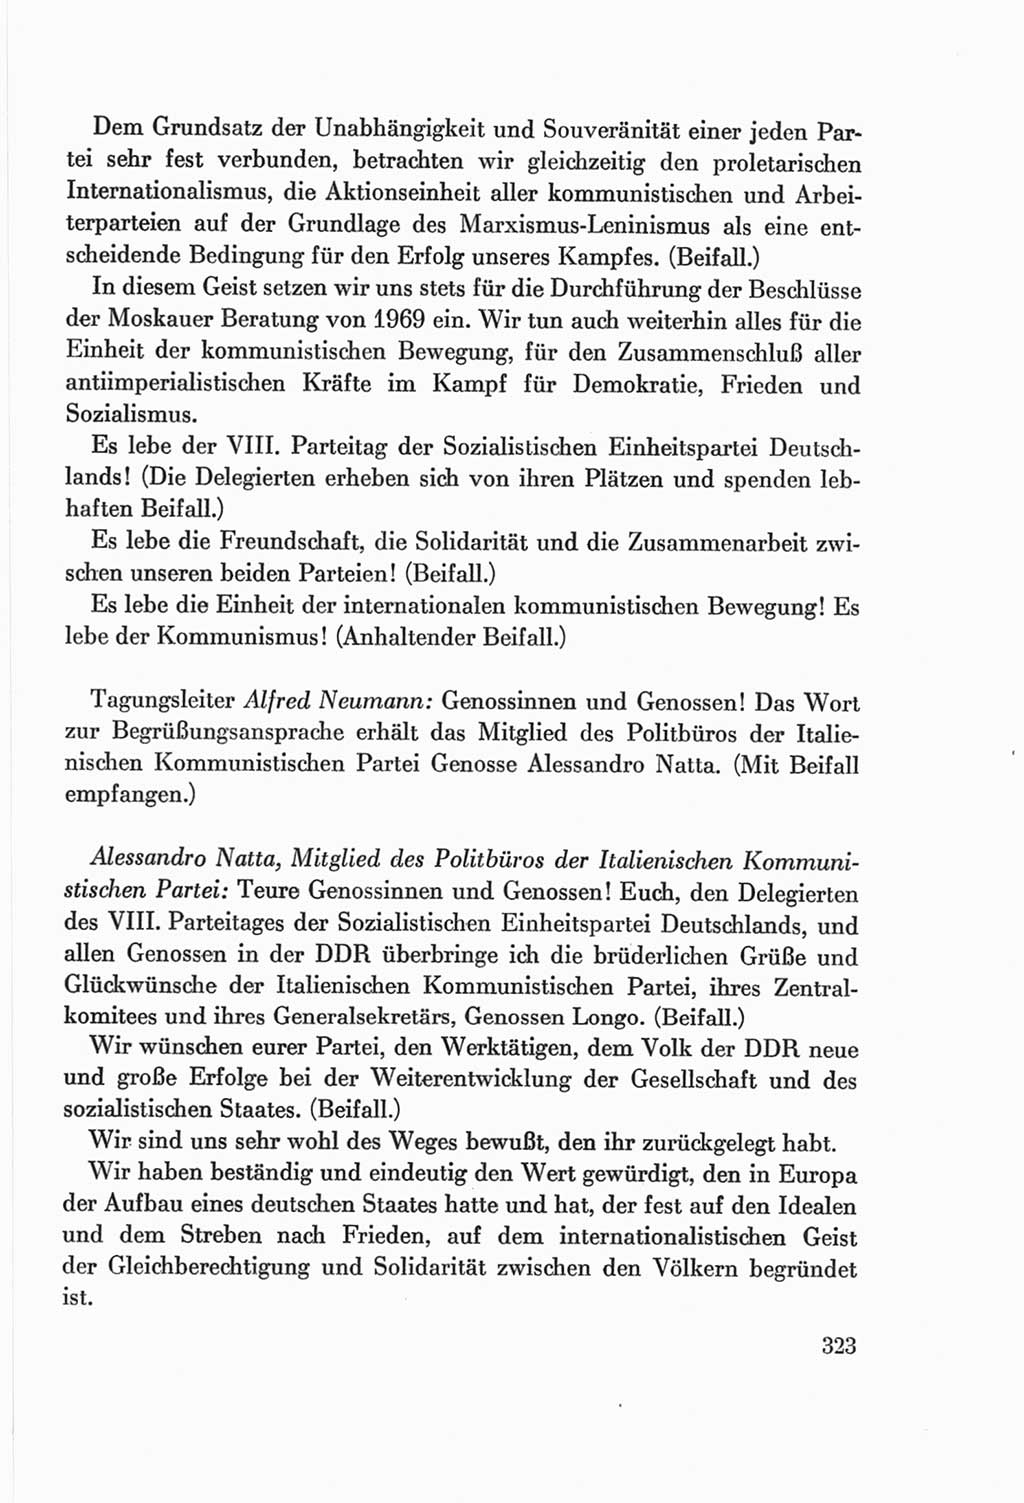 Protokoll der Verhandlungen des Ⅷ. Parteitages der Sozialistischen Einheitspartei Deutschlands (SED) [Deutsche Demokratische Republik (DDR)] 1971, Band 1, Seite 323 (Prot. Verh. Ⅷ. PT SED DDR 1971, Bd. 1, S. 323)